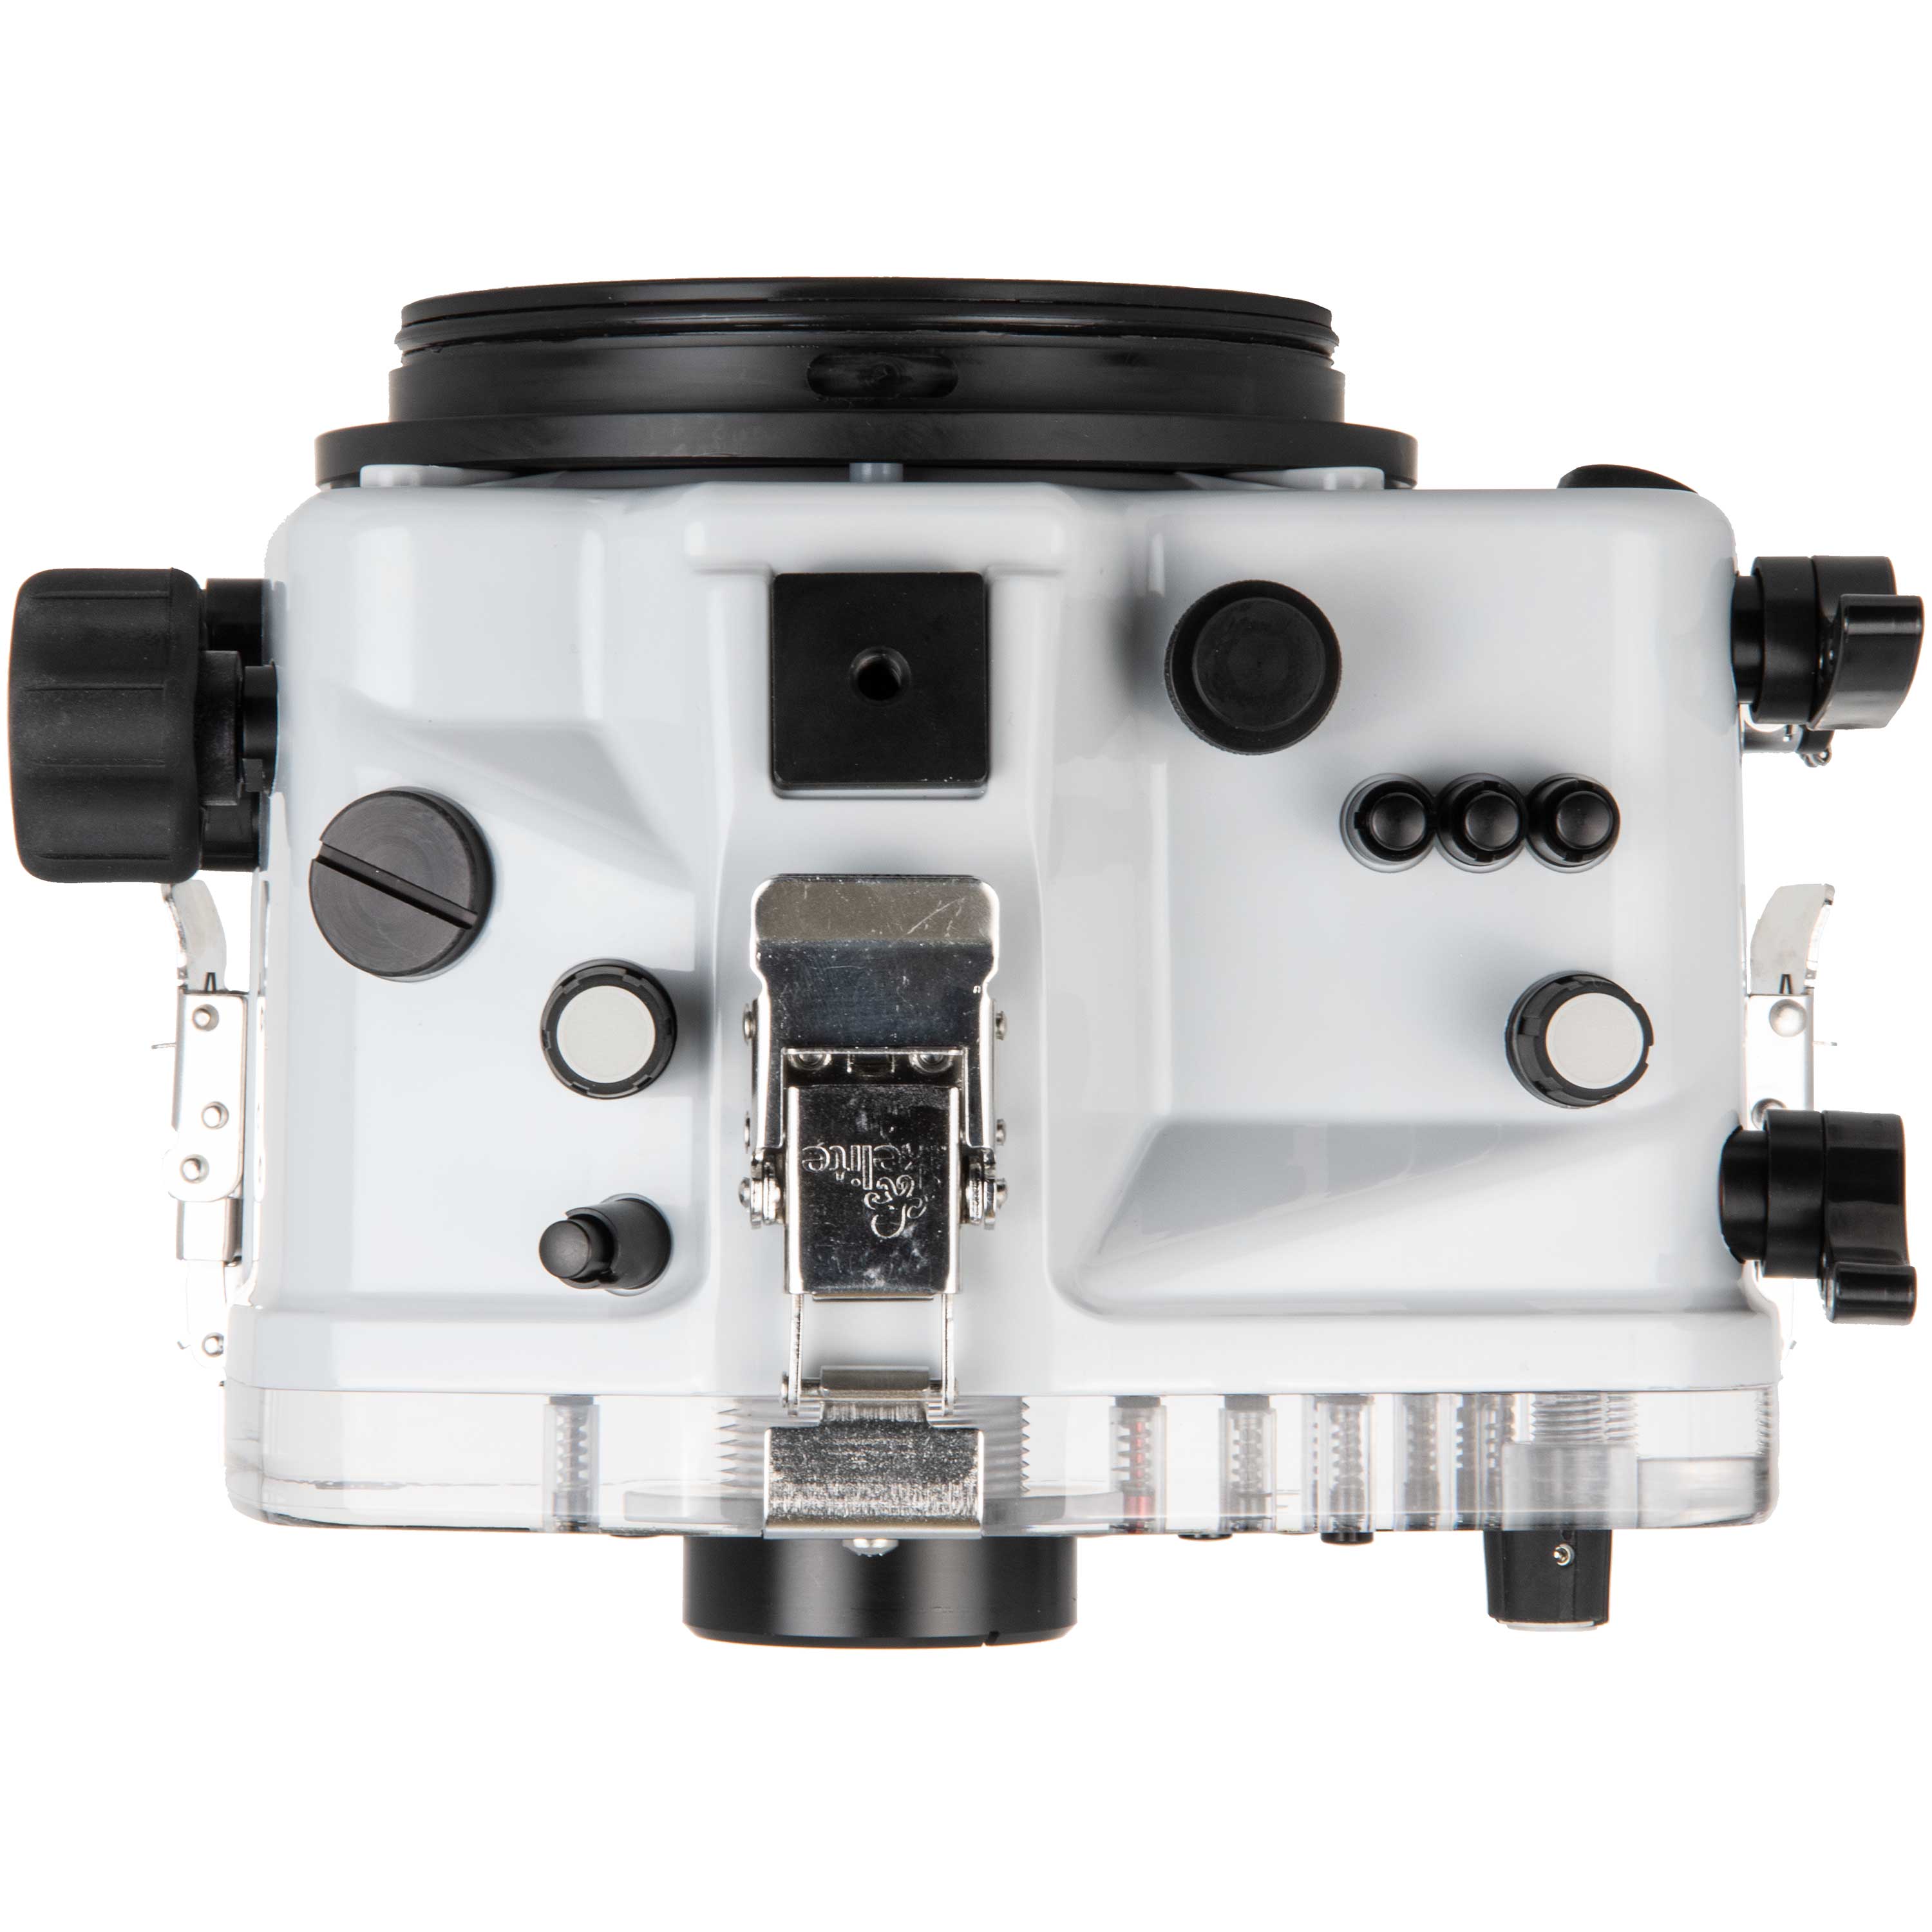 Ikelite Underwater Housing for Panasonic Lumix DC-S1, DC-S1R Mirrorless Digital Cameras